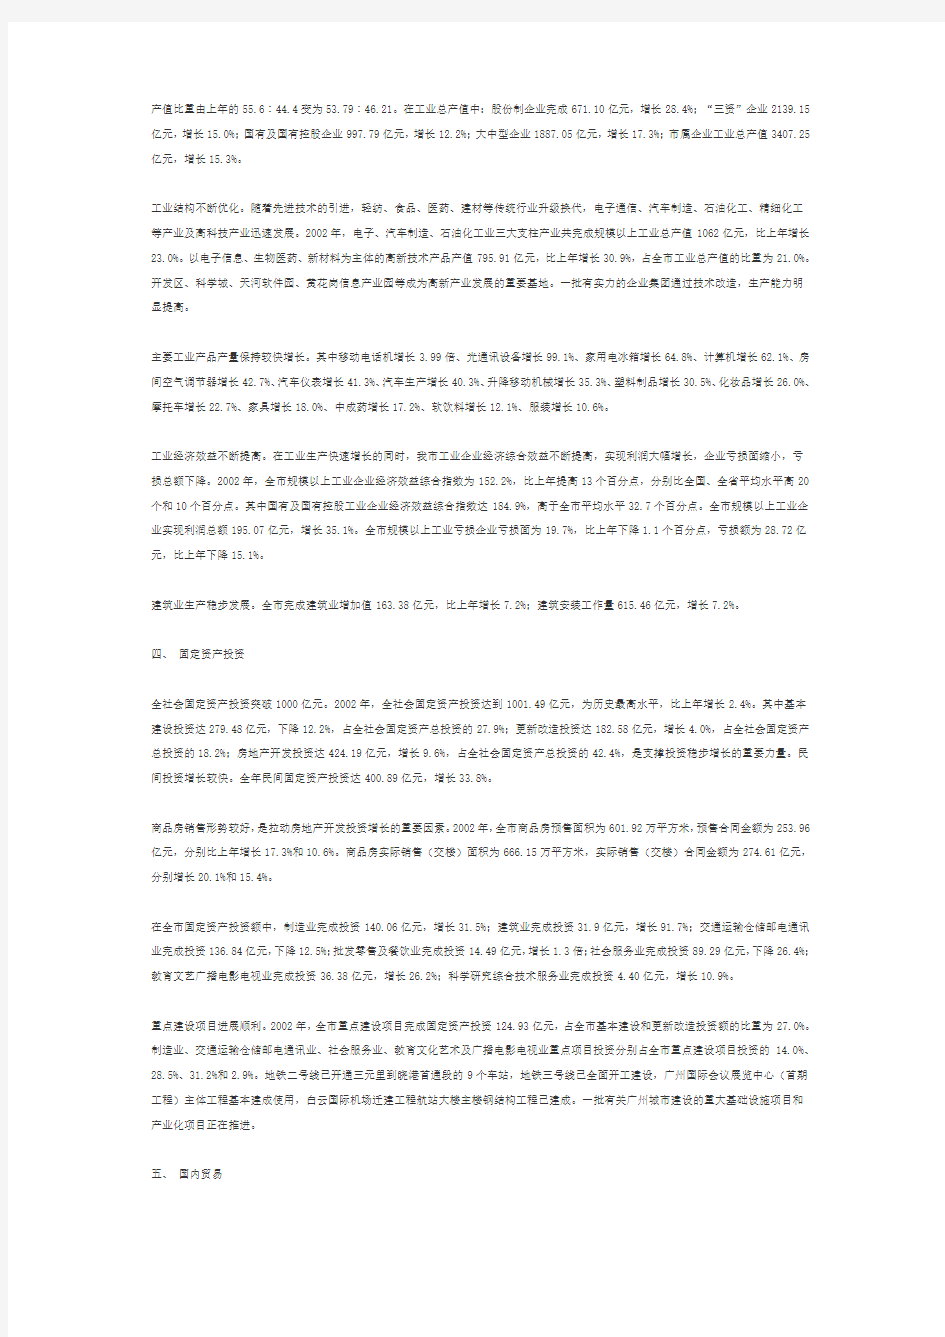 广州市2002年国民经济和社会发展统计公报